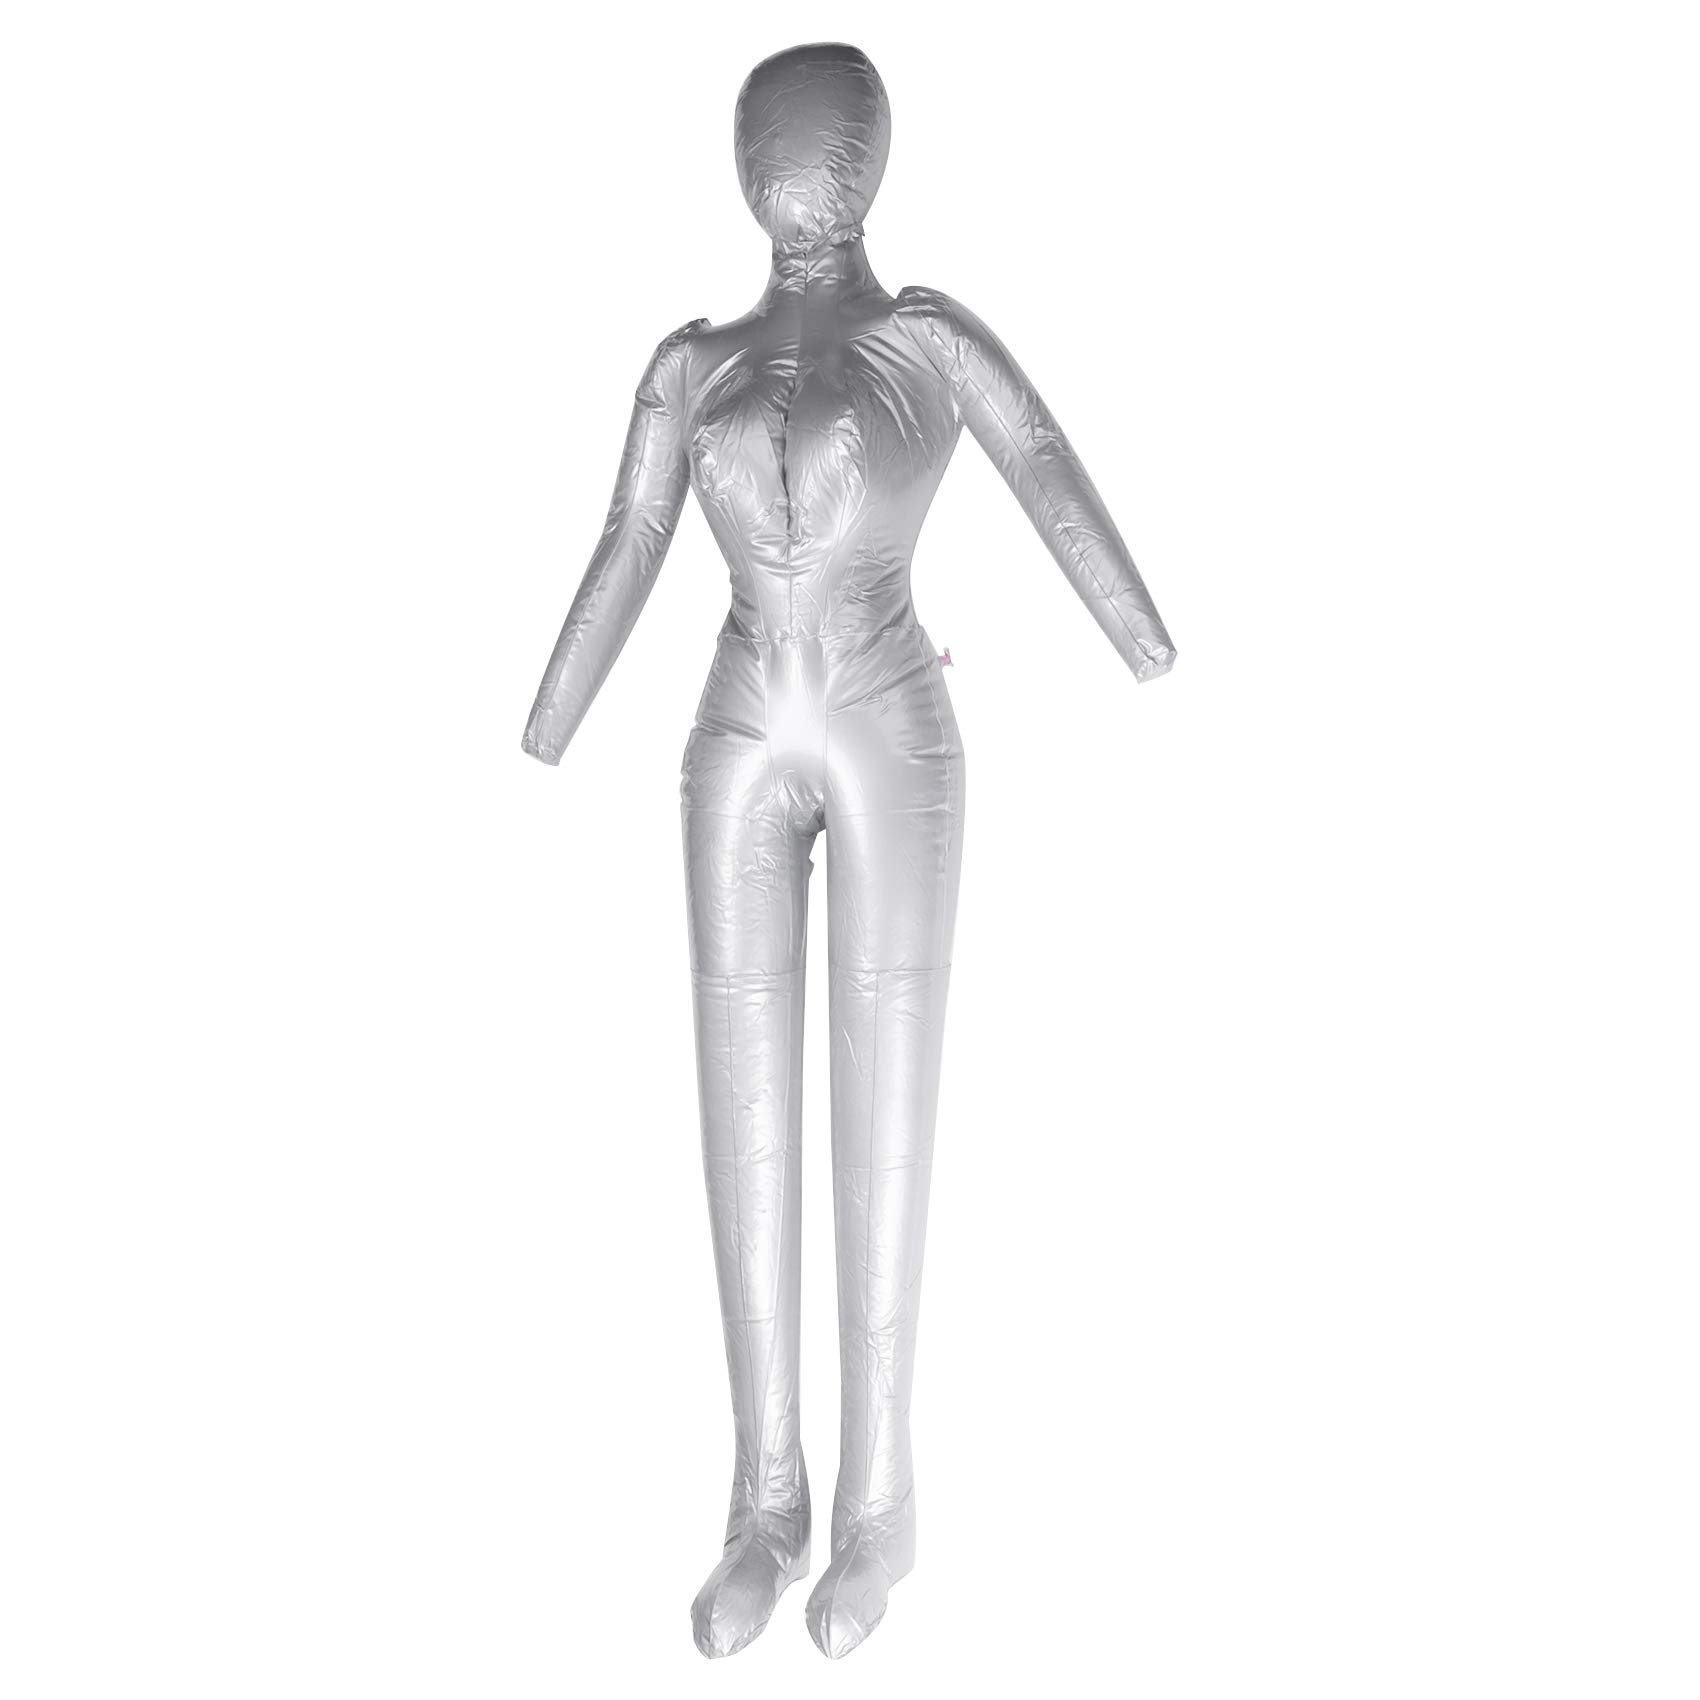 Fayme Aufblasbares Weibliches Ganz KKRper Modell mit Arm Damen Mannequin Fenster Ausstellungs Requisiten